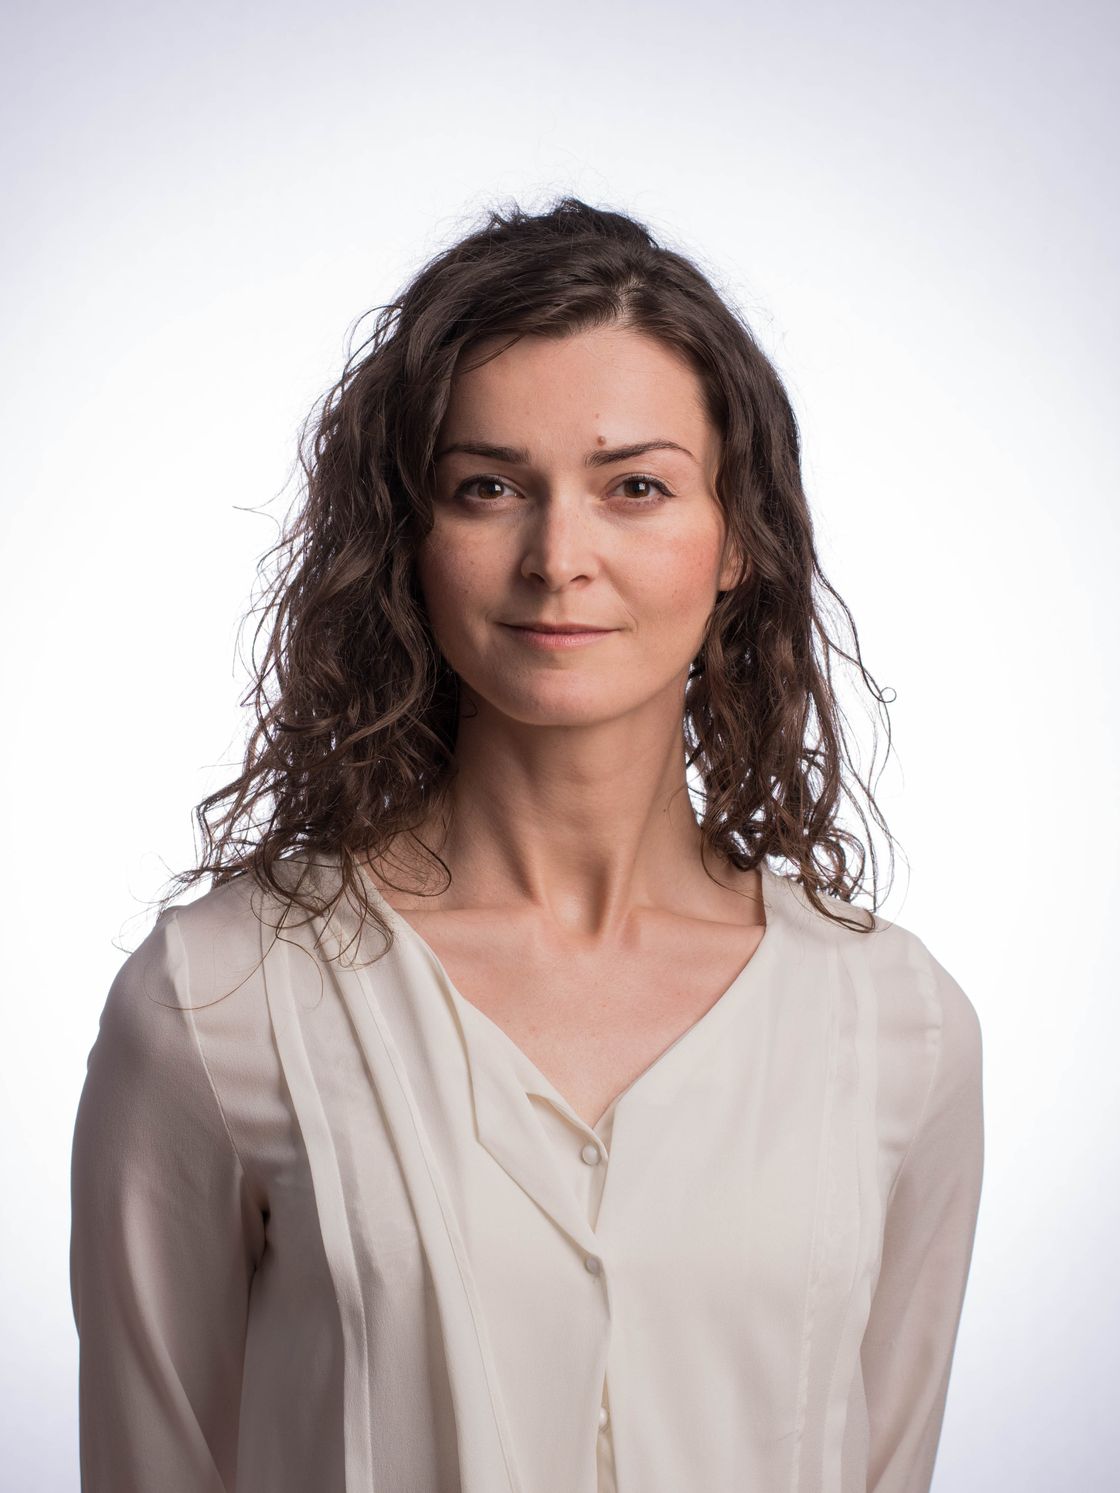 Model aarhus fotograf portræt kvinde linkedin professionel profil